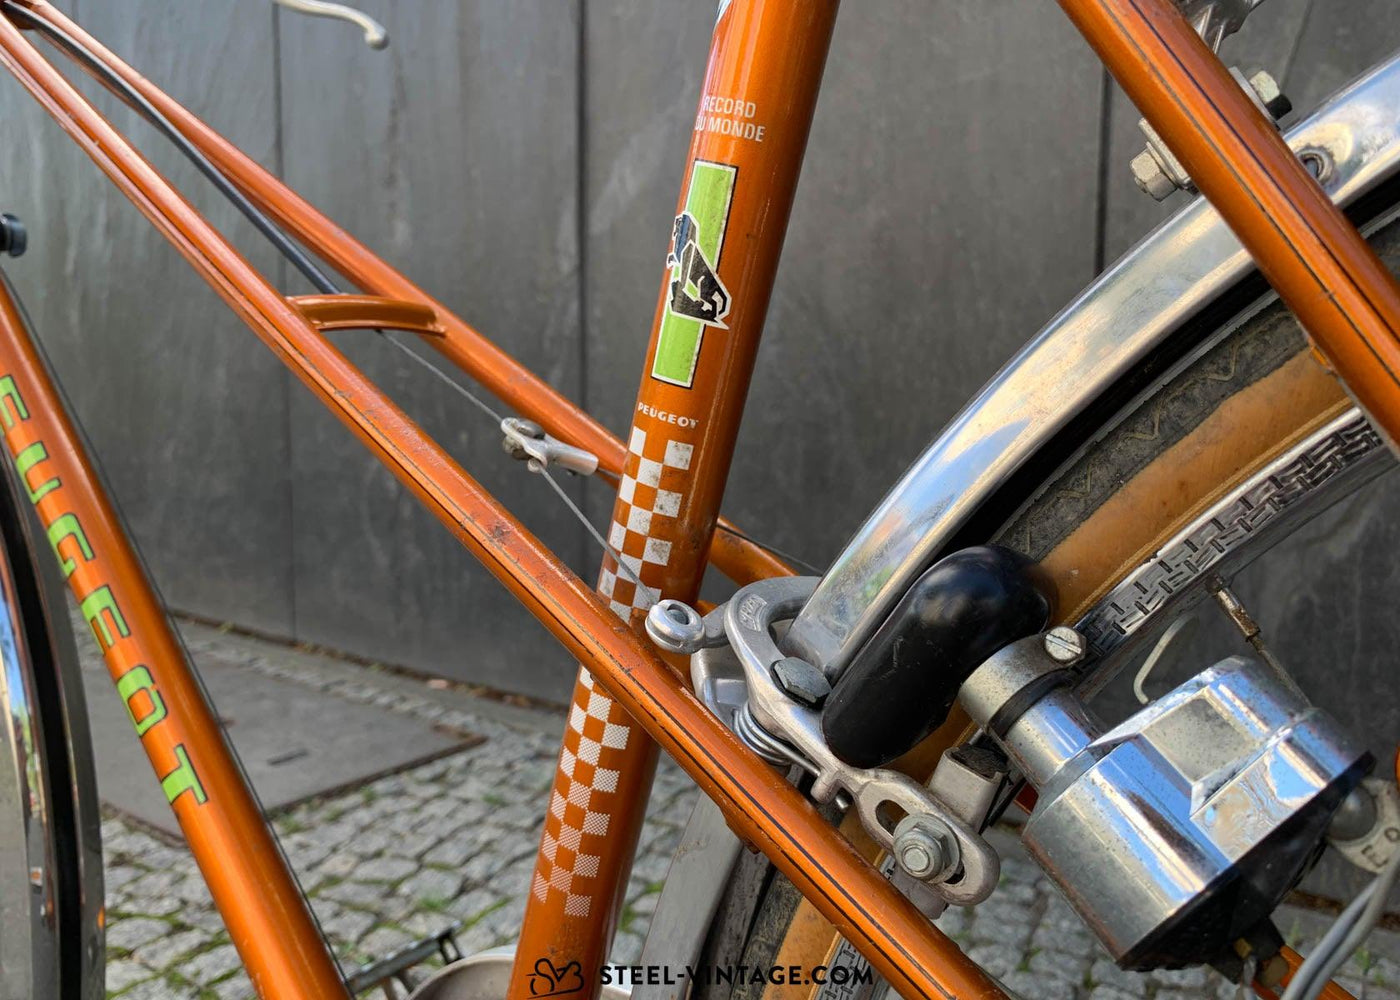 Peugeot Vintage Mixte Bike - Steel Vintage Bikes